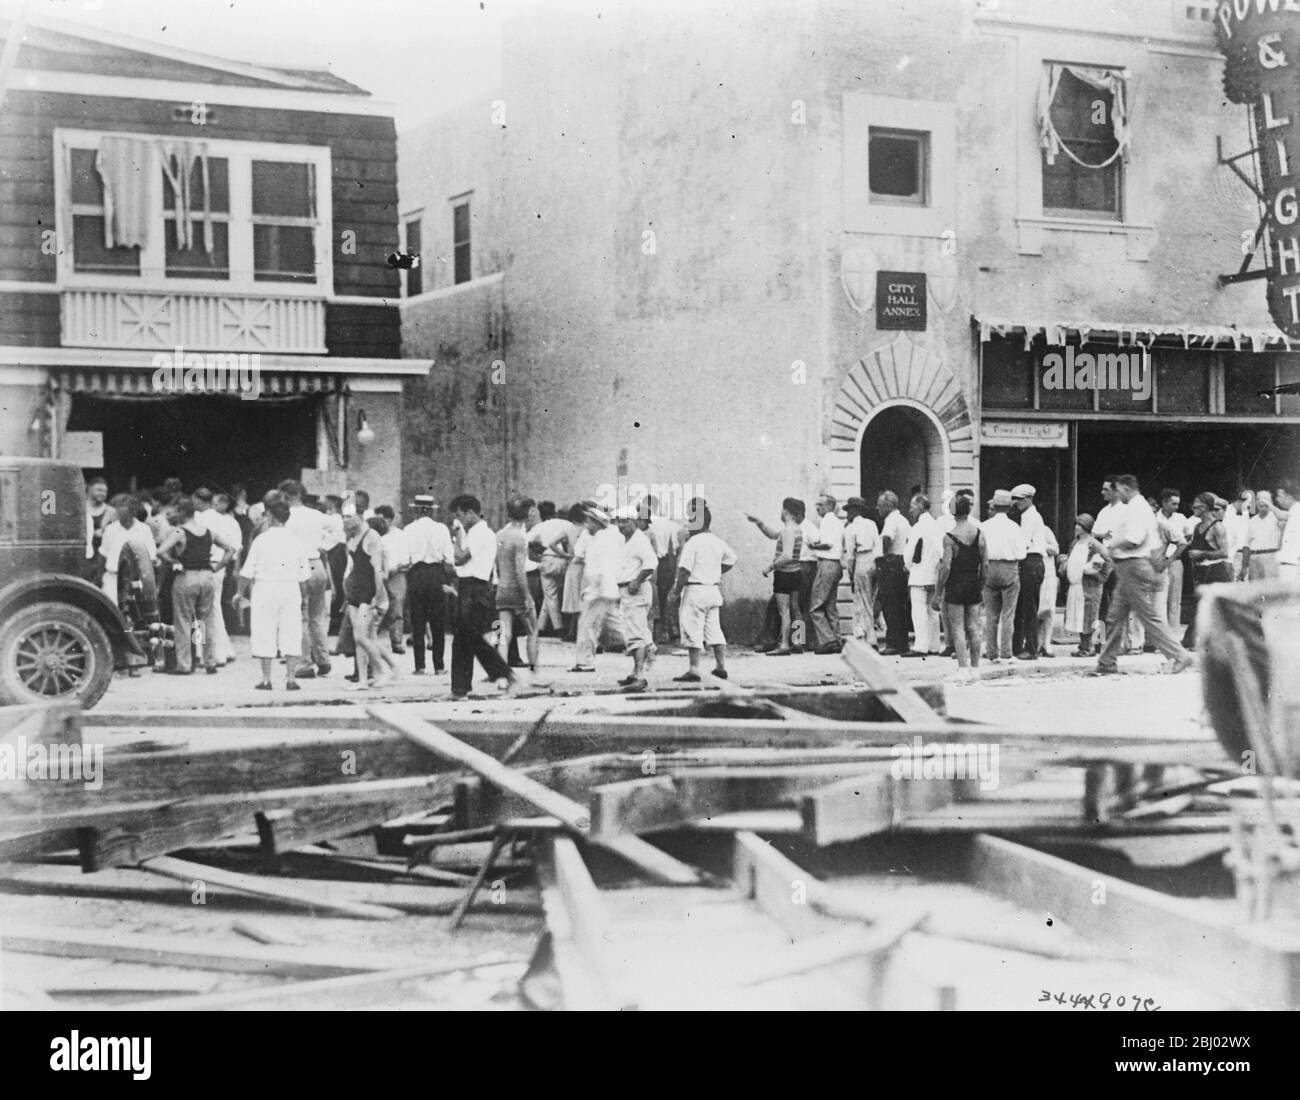 Verteilung von Lebensmitteln nach katastrophalen Hurrikan und Überschwemmungen in Florida . - Bewohner von Miami in Trümmern übersäten Straßen stehen in der Schlange warten auf Tickets berechtigen sie zu ihren Rationen von Lebensmitteln. - 2. Oktober 1926 Stockfoto